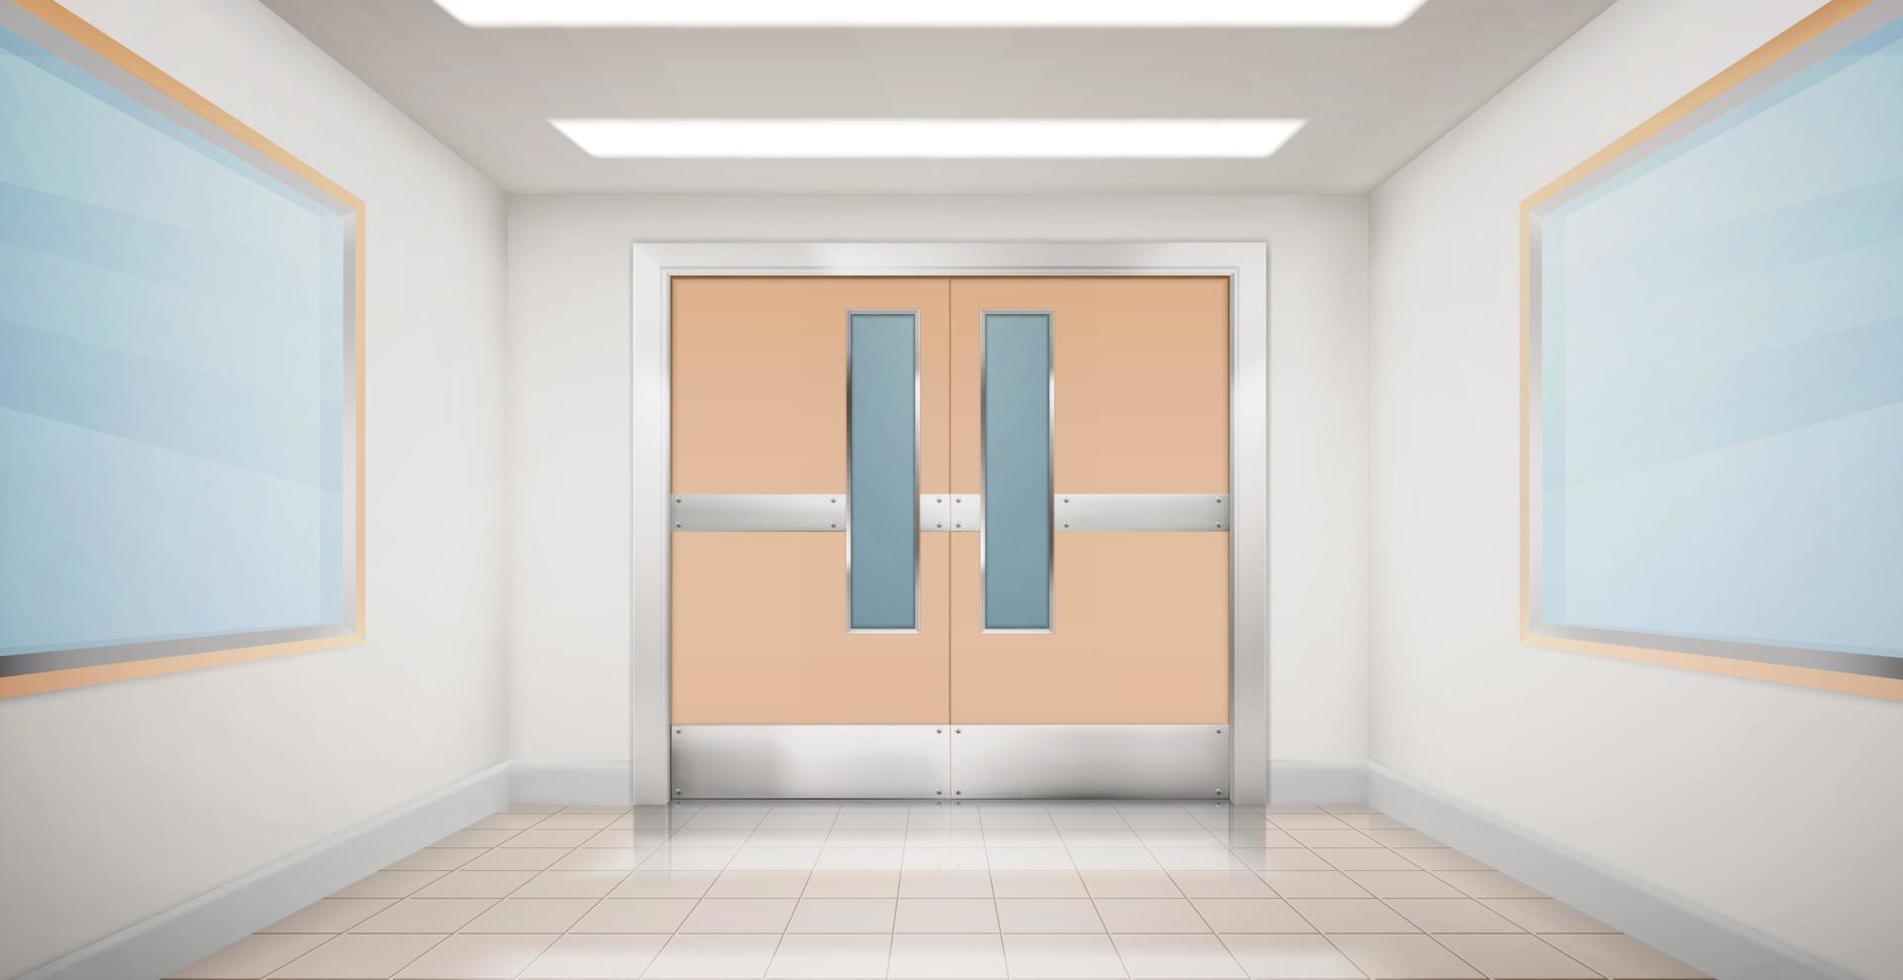 puertas en el pasillo del hospital, laboratorio o escuela vector